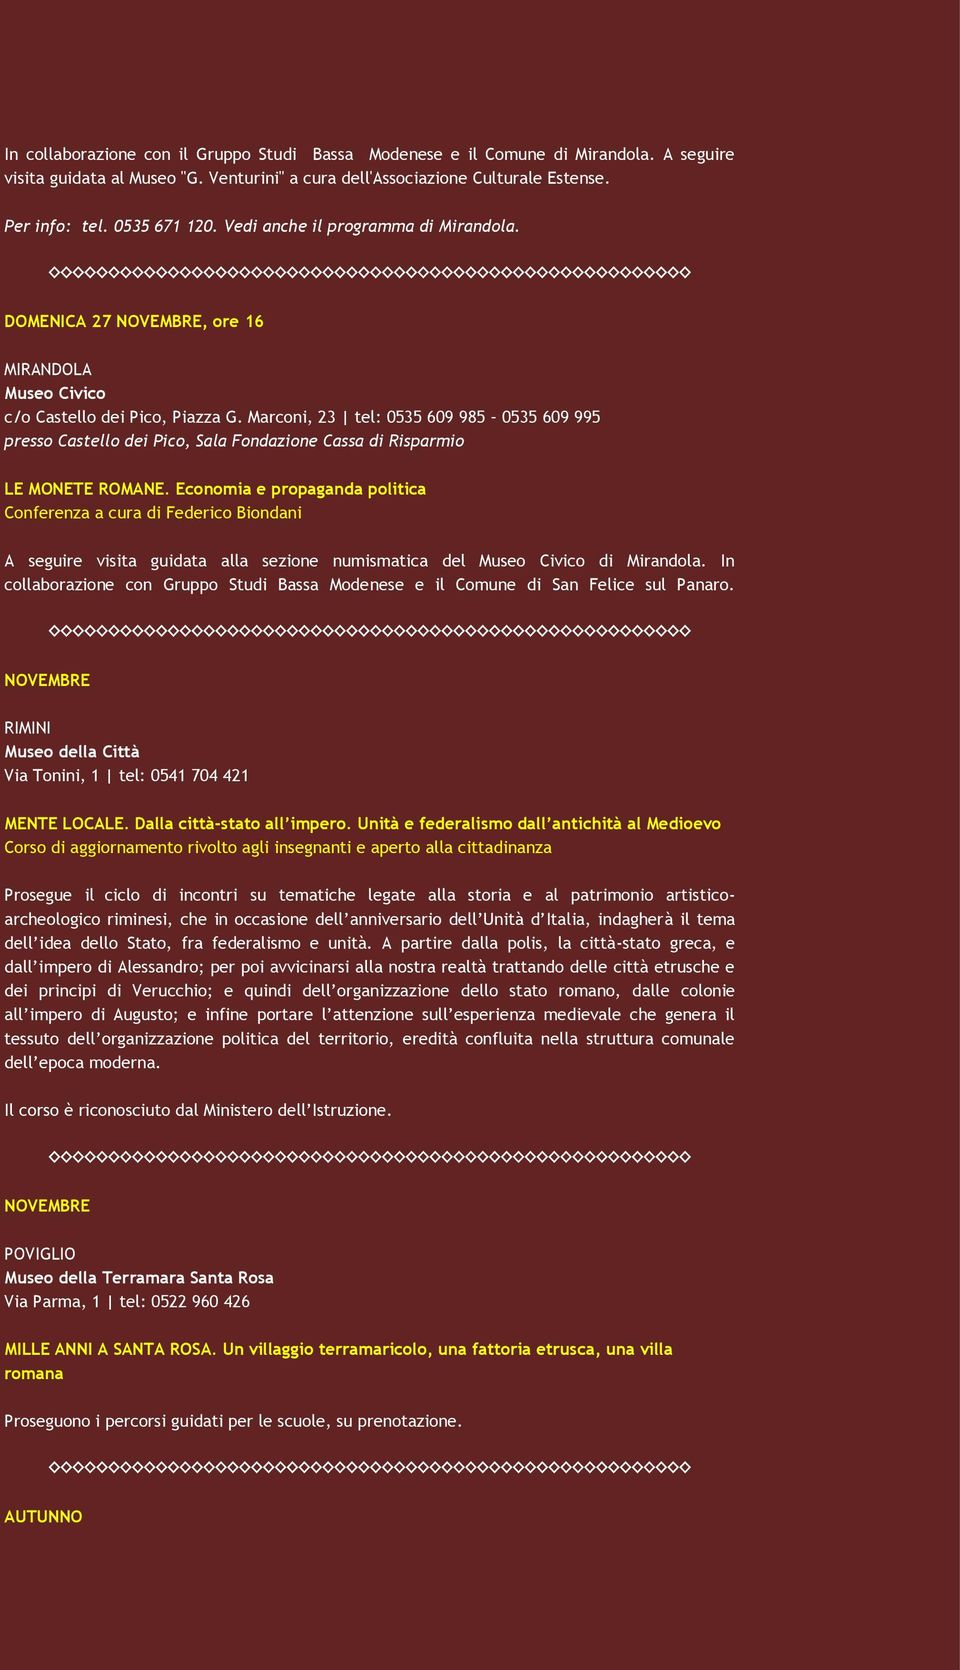 Marconi, 23 tel: 0535 609 985 0535 609 995 presso Castello dei Pico, Sala Fondazione Cassa di Risparmio LE MONETE ROMANE.